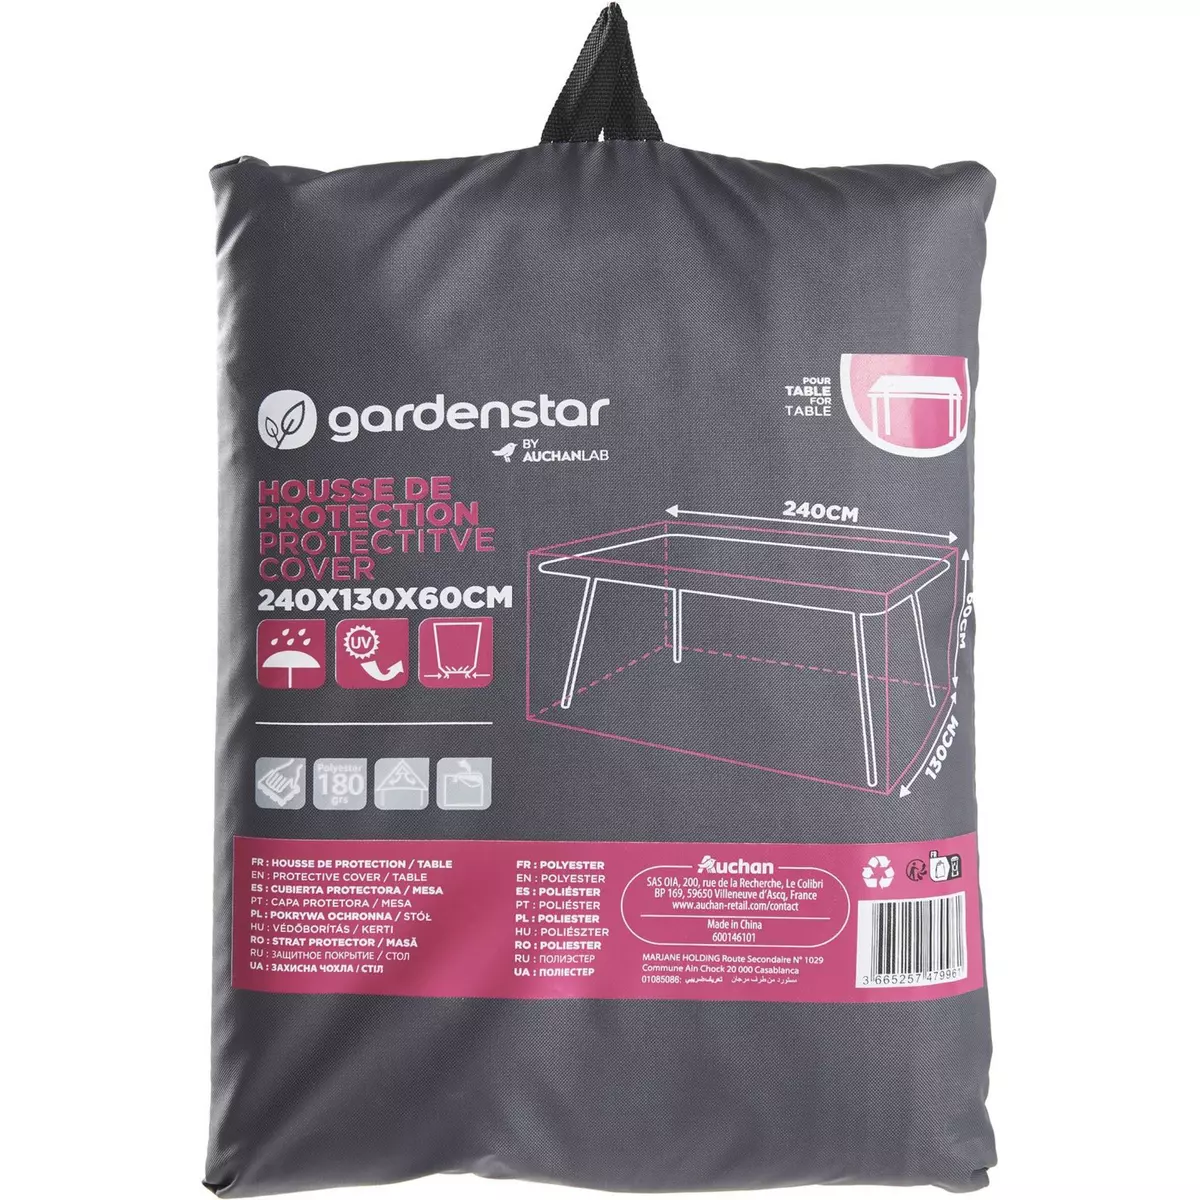 GARDENSTAR Housse de protection Table - Polyester - 240x130x60cm